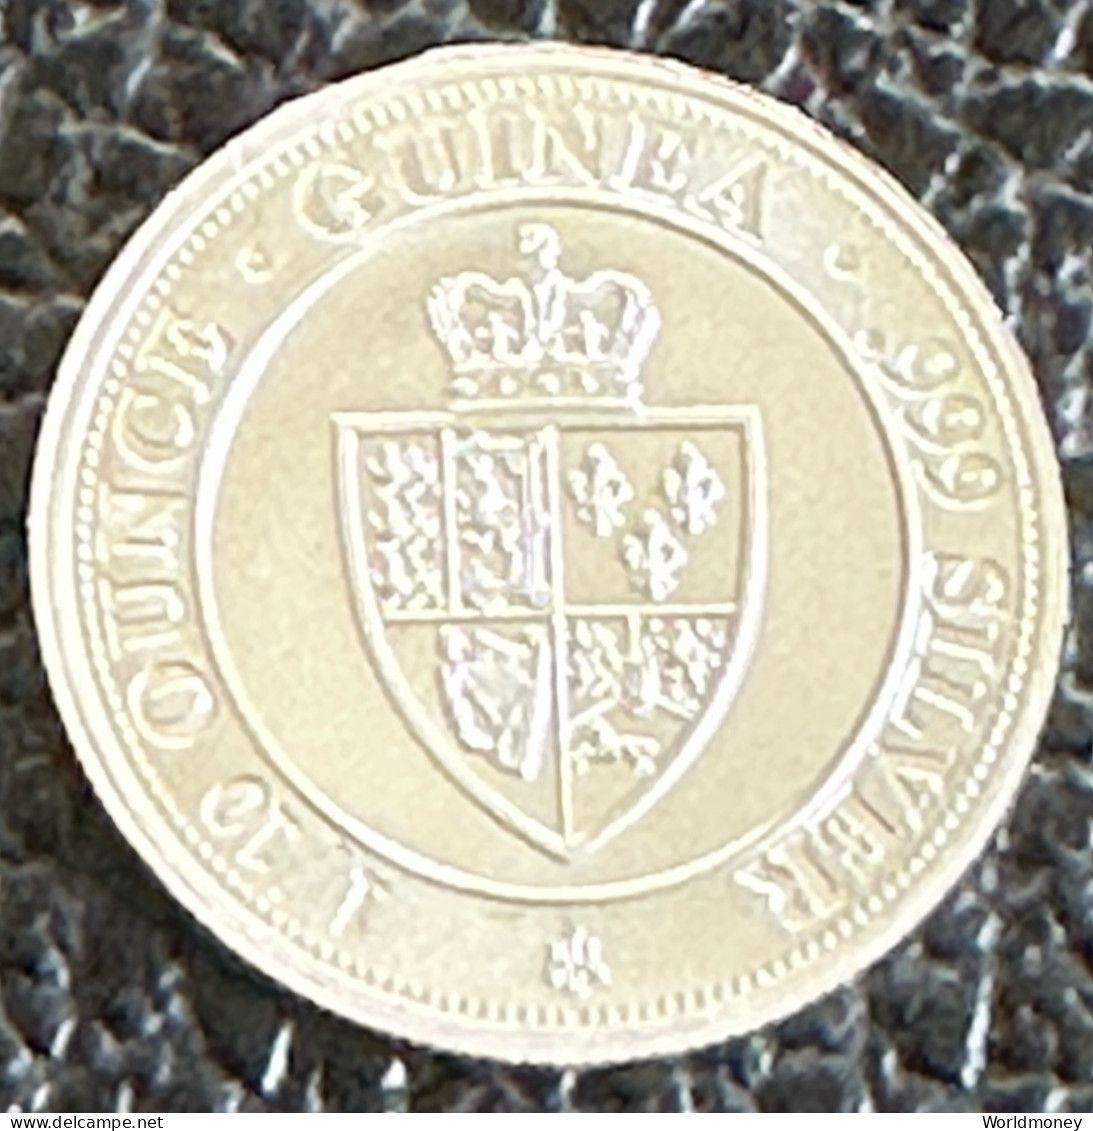 Saint Helena 10 Pence 2020  -  1/10 Oz Spade Guinea Shield (Silver) - Saint Helena Island